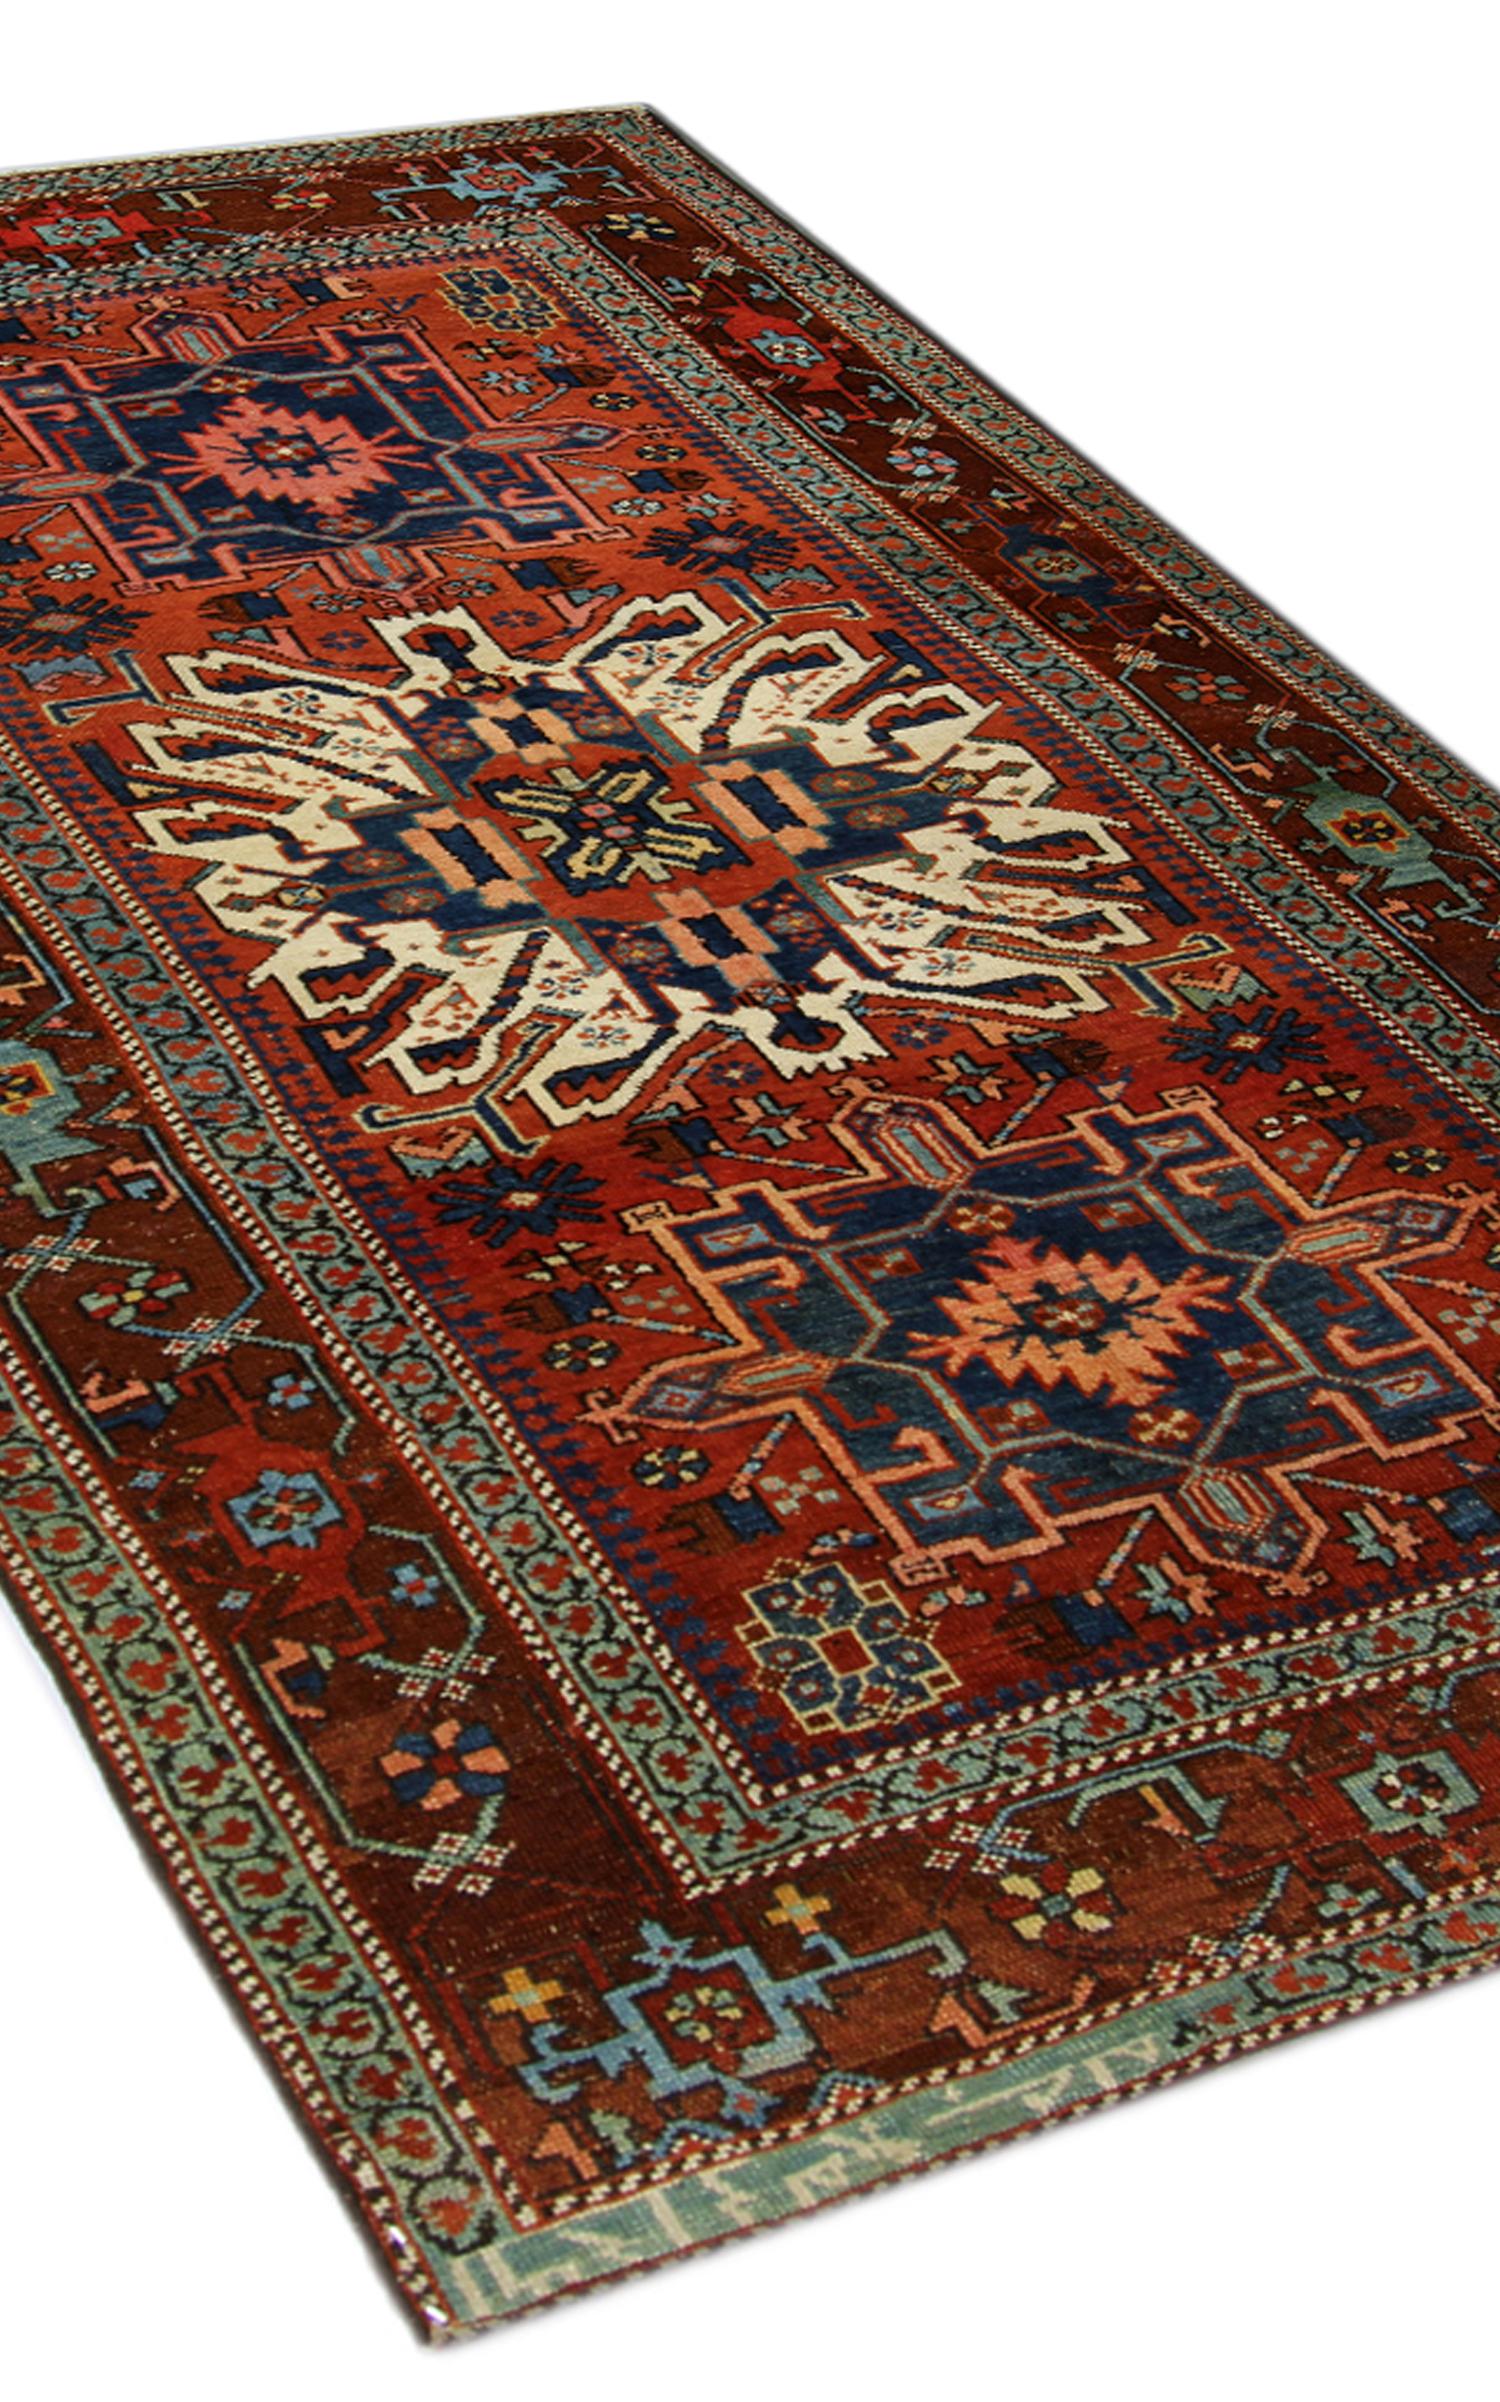 Dieser schöne Wollteppich ist ein schönes Beispiel für einen Teppich aus den 1890er Jahren. Das Muster besteht aus drei Medaillons, die in der Mitte auf einem orange-braunen Feld gewebt sind. Die Akzente sind in Elfenbein-, Blau- und Orangetönen